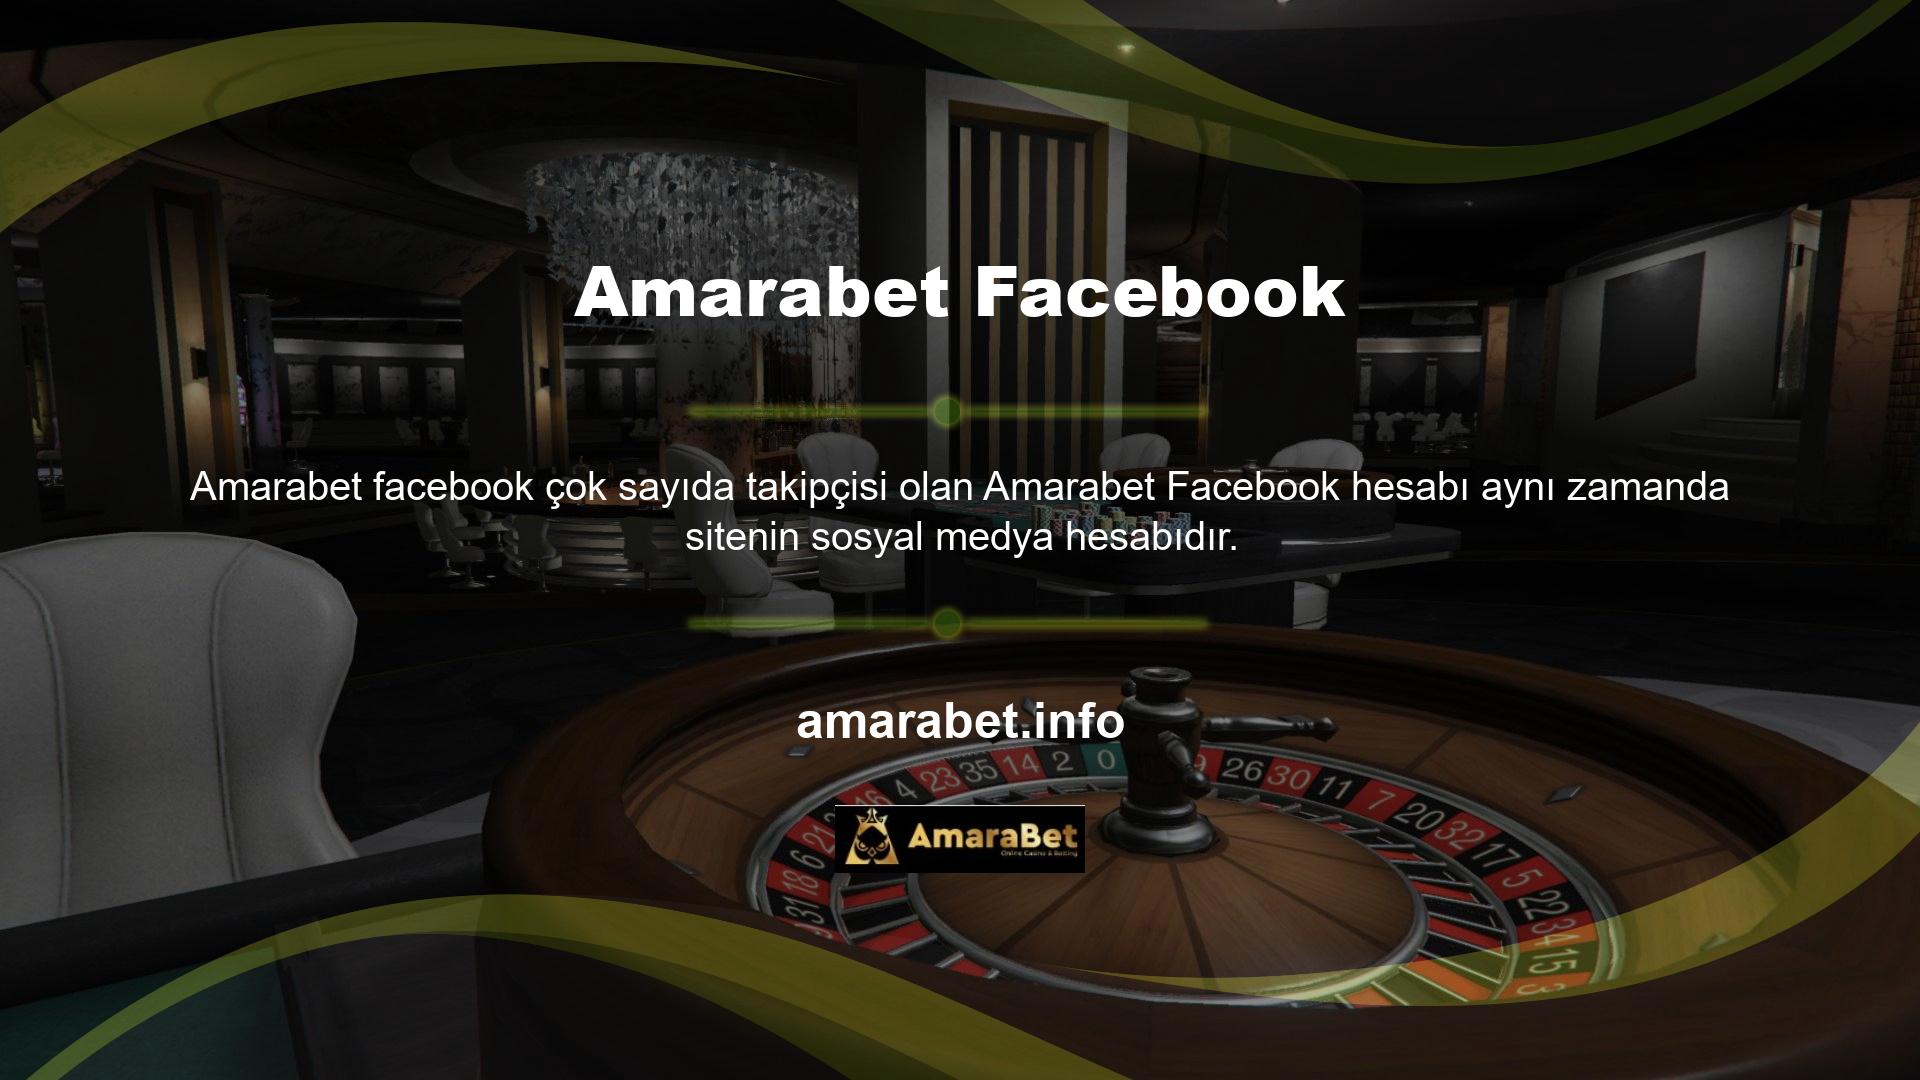 Bu hesabın aktif olarak kullanıldığı sosyal medya yarışması "Amarabet" ilk olarak bu hesap tarafından yürütülmüştür